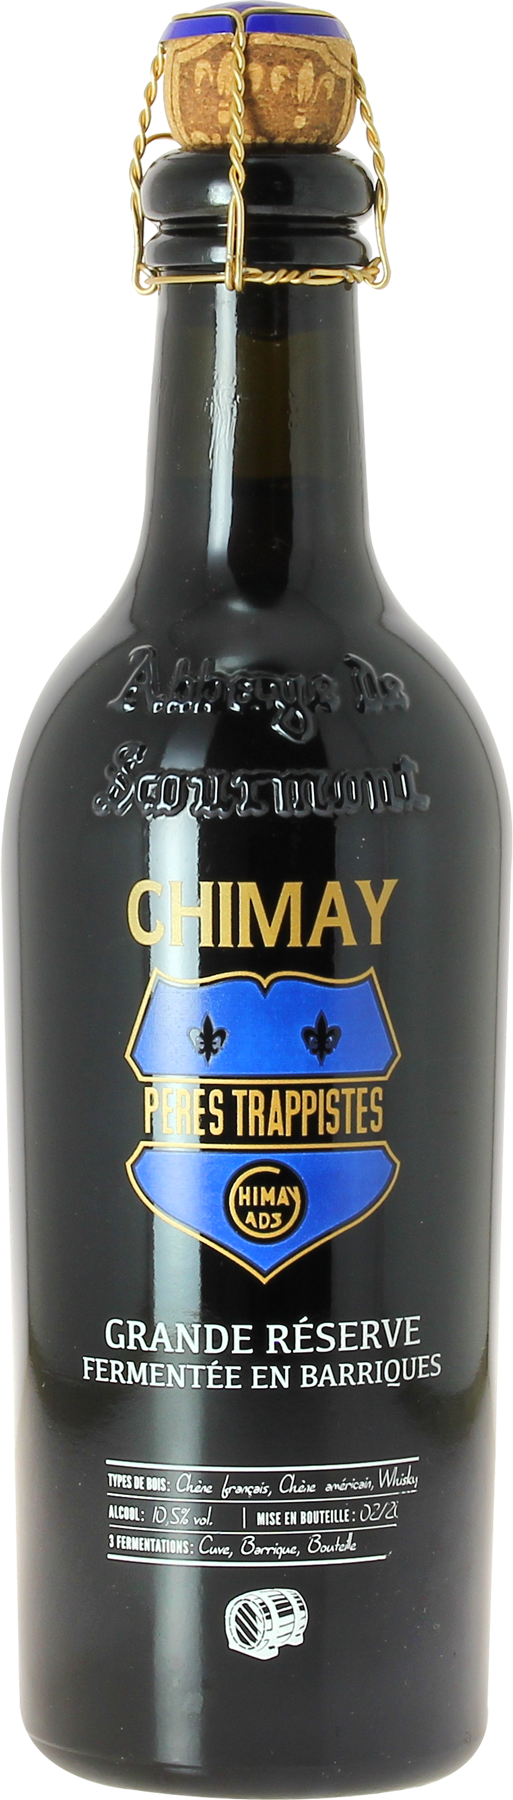 Une Chimay Grande réserve millésime 2018 vieillie en fût de chêne, un brassin d'exception pour cette grande bière trappiste.